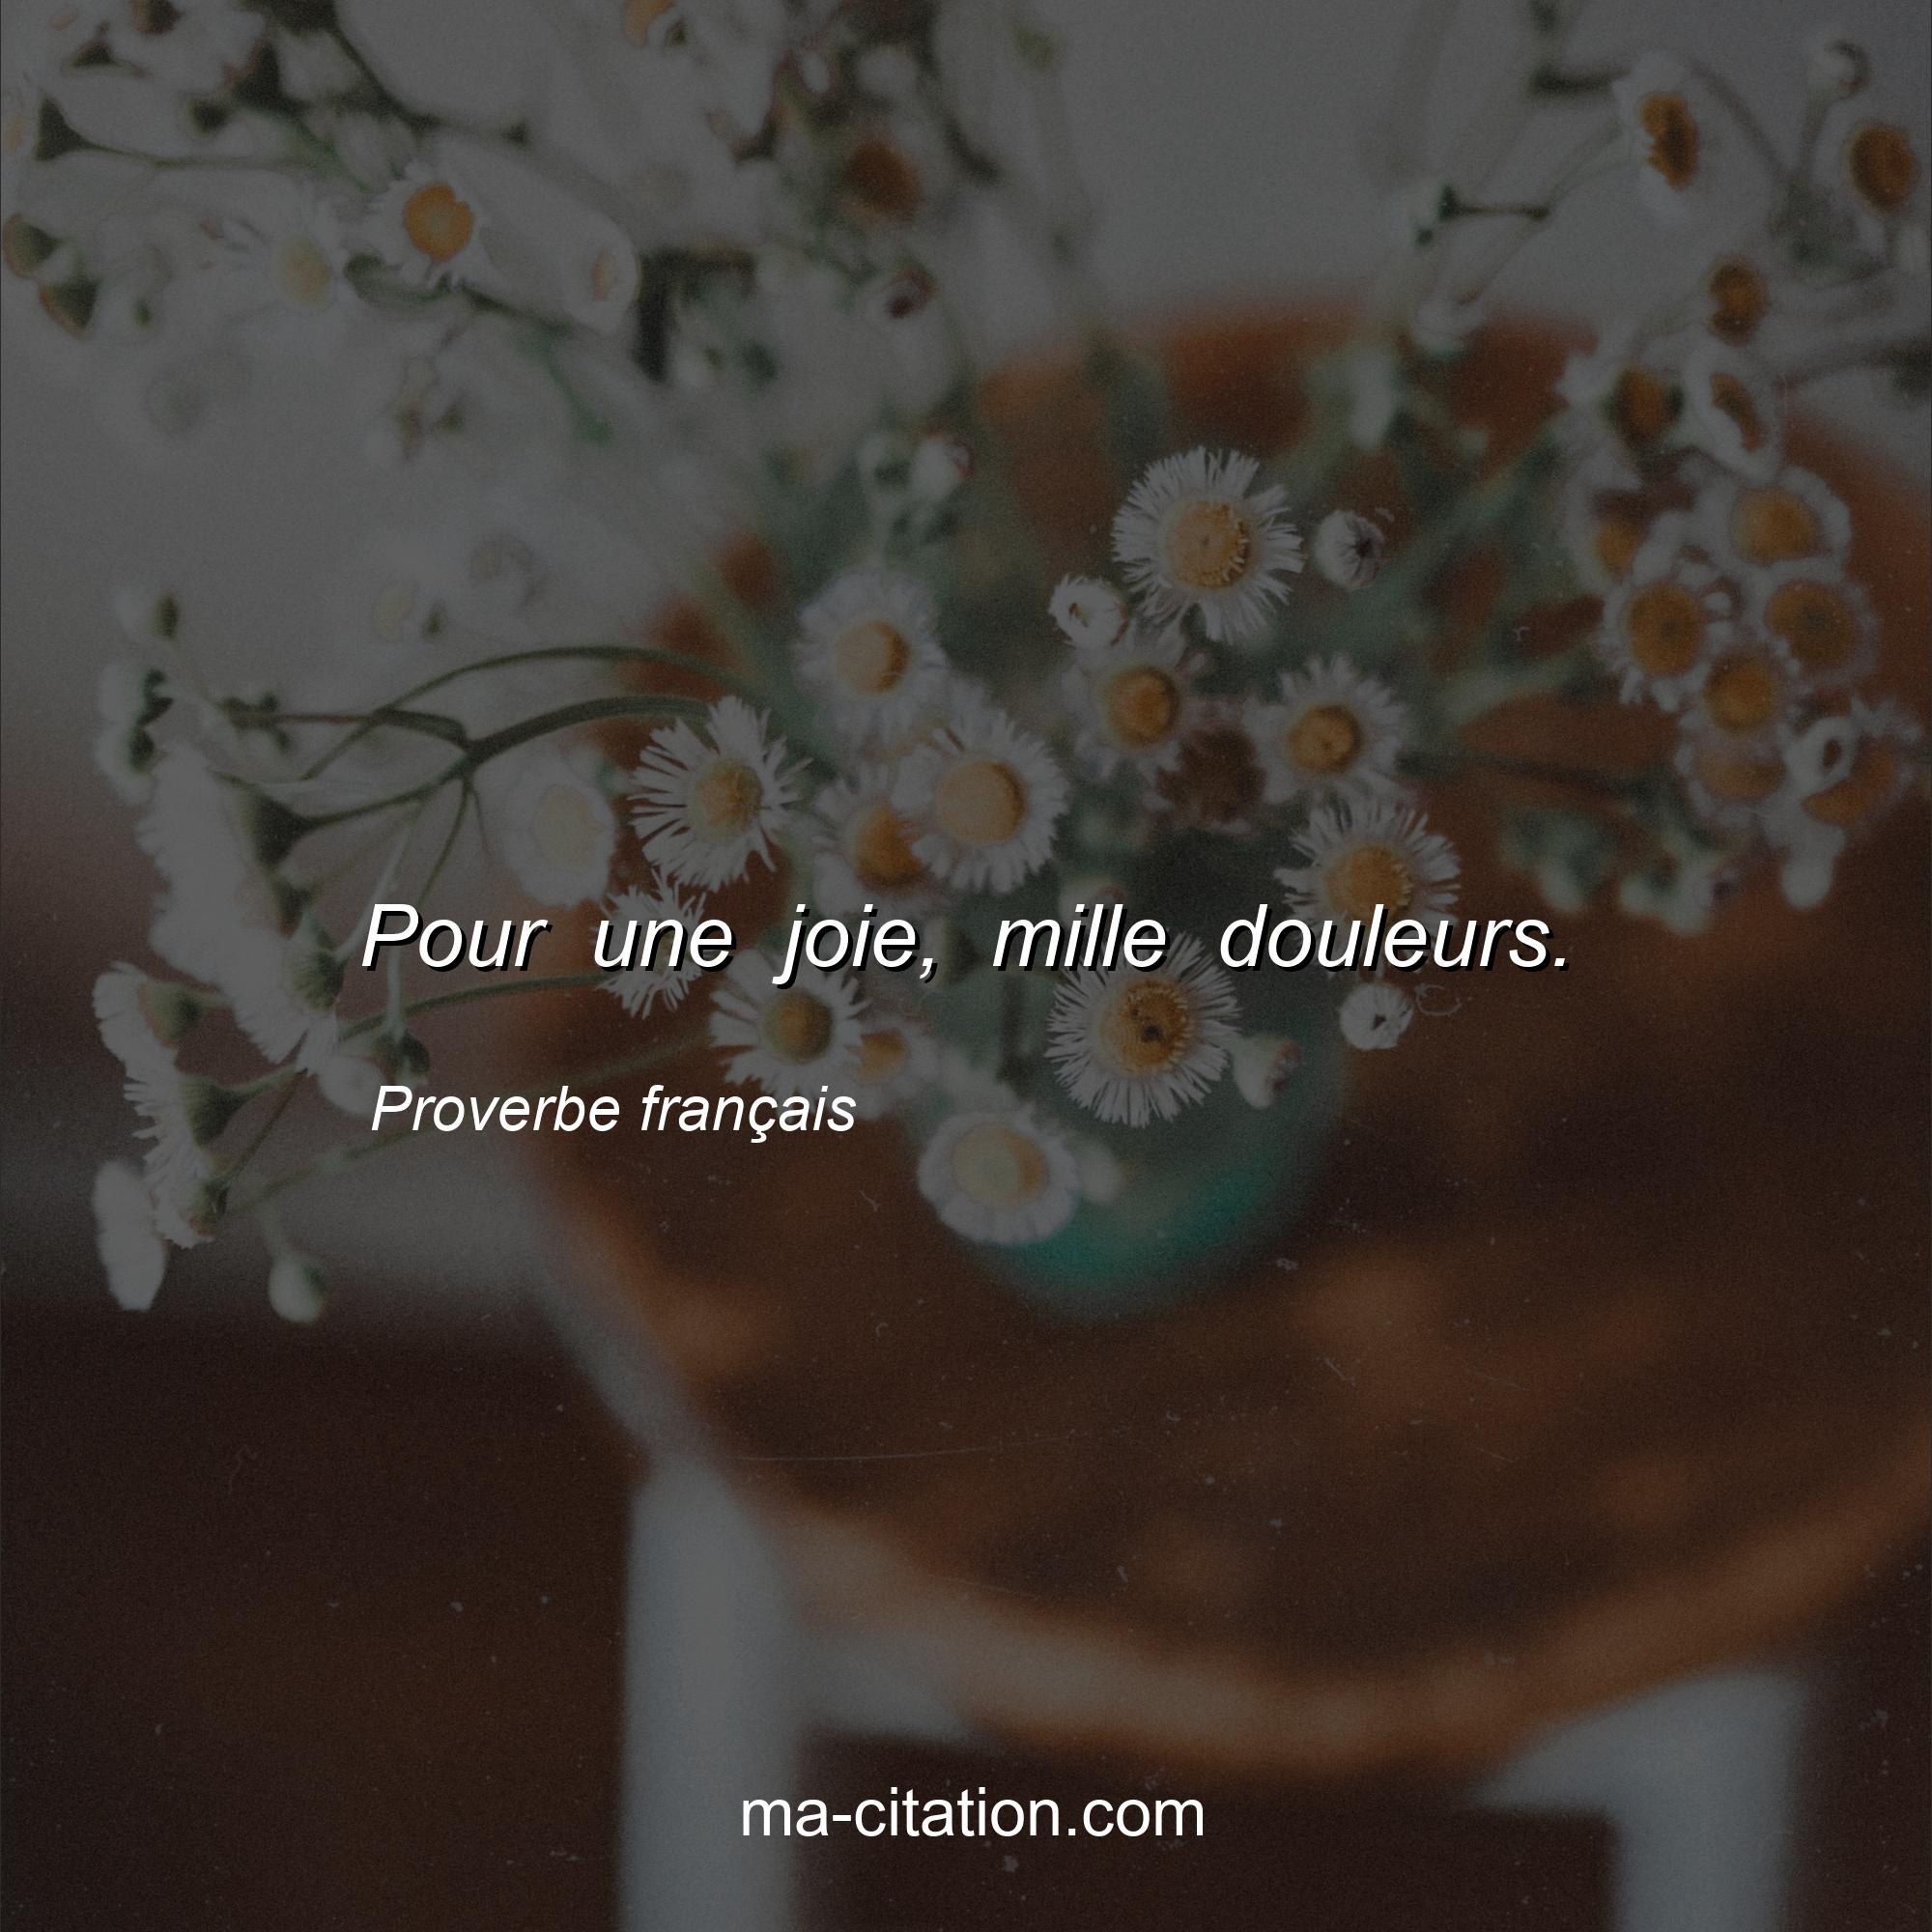 Proverbe français : Pour une joie, mille douleurs.